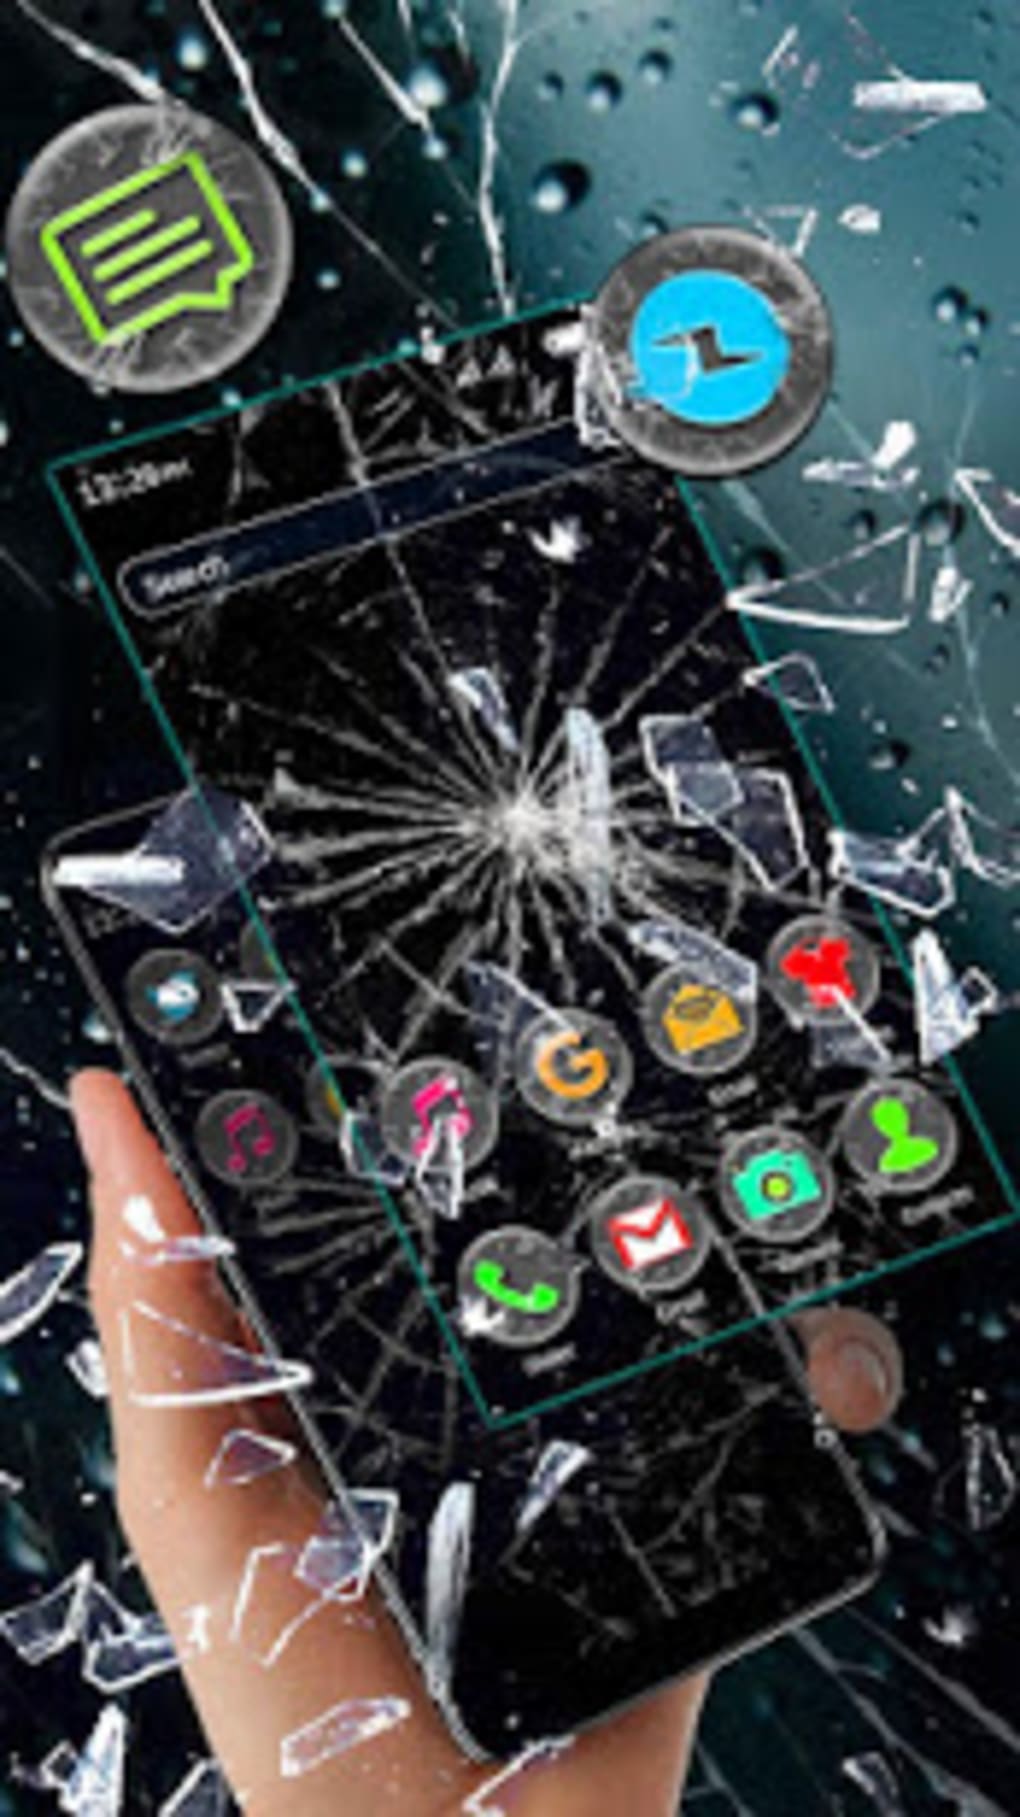 Broken Glass Hd Theme Live Wallpaper - Iphone - 1020x1817 Wallpaper -  